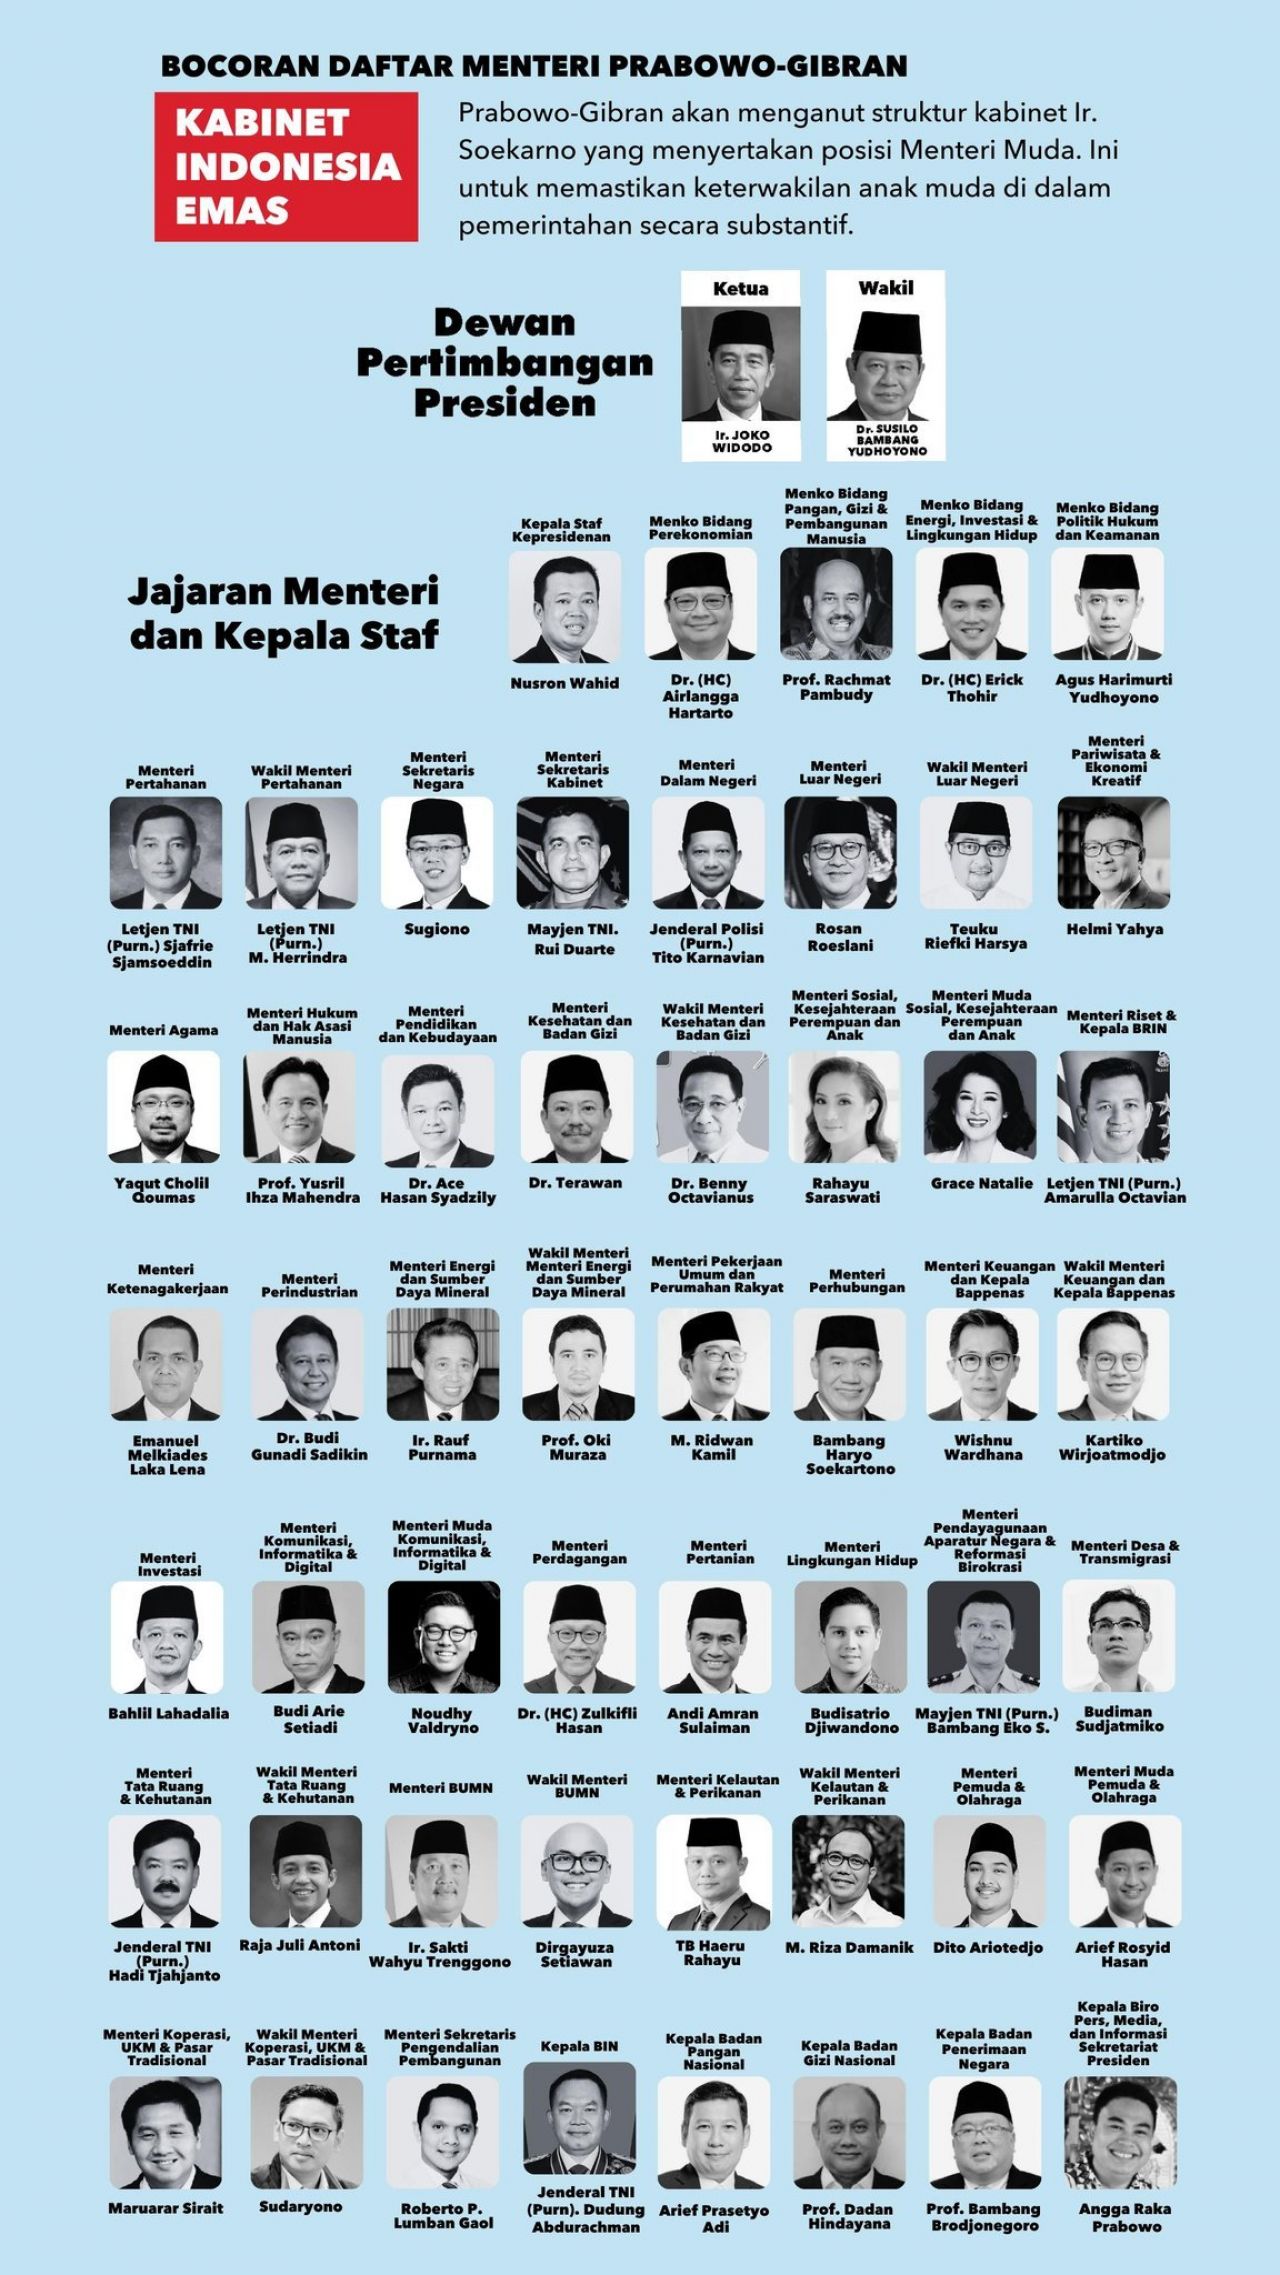 Bocoran Daftar Kabinet Capres Prabowo Subianto yang tersebar di Media Sosial.